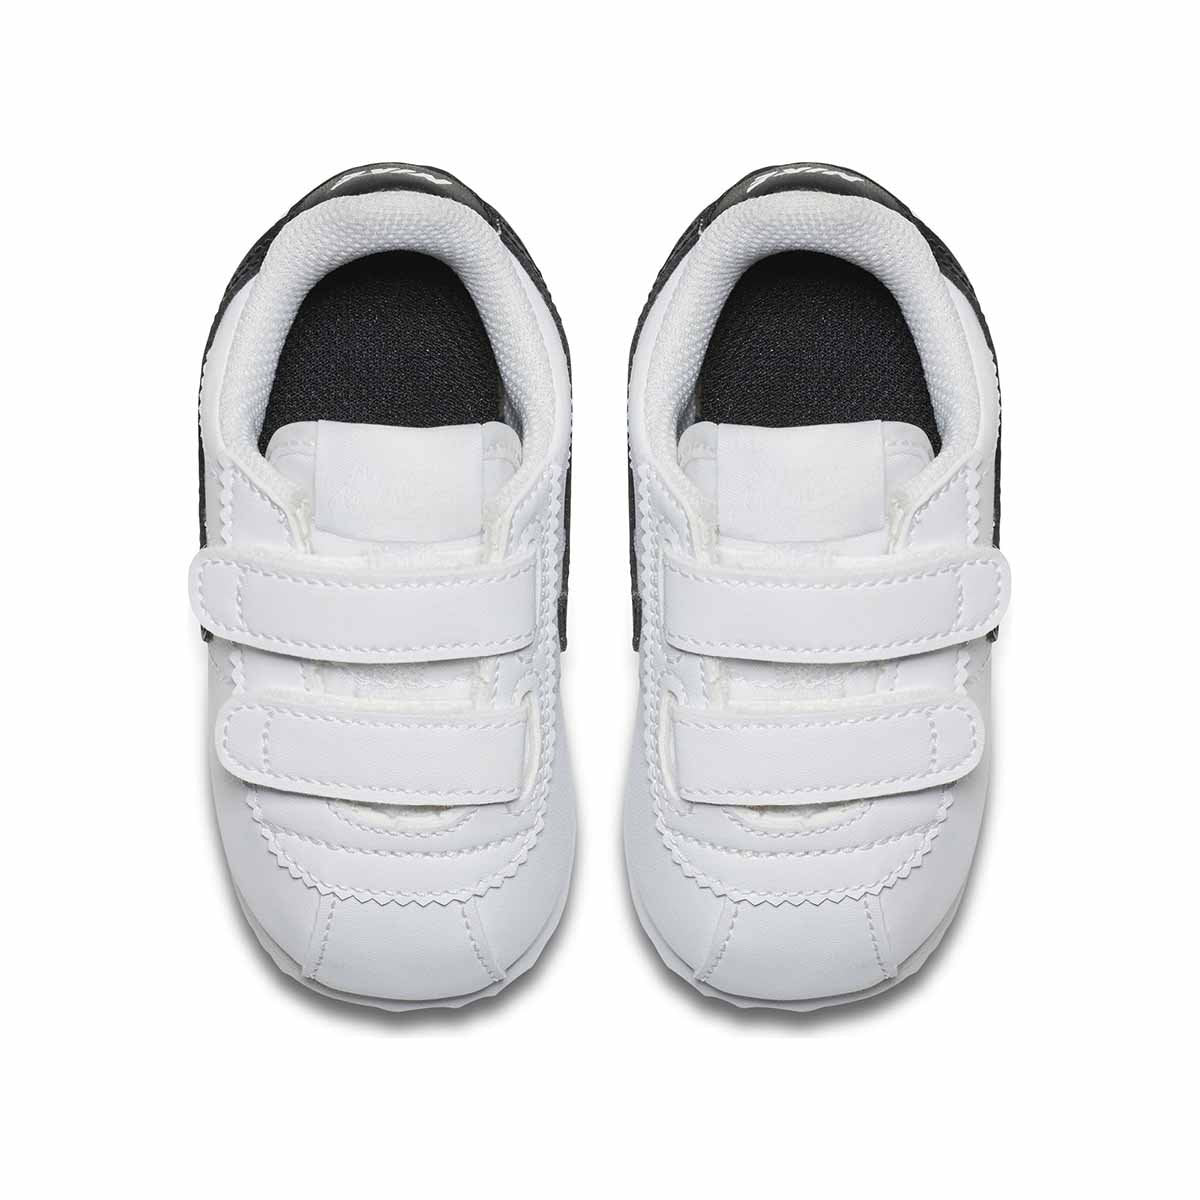 Infant Boys' Nike Basic SL - Millennium Shoes